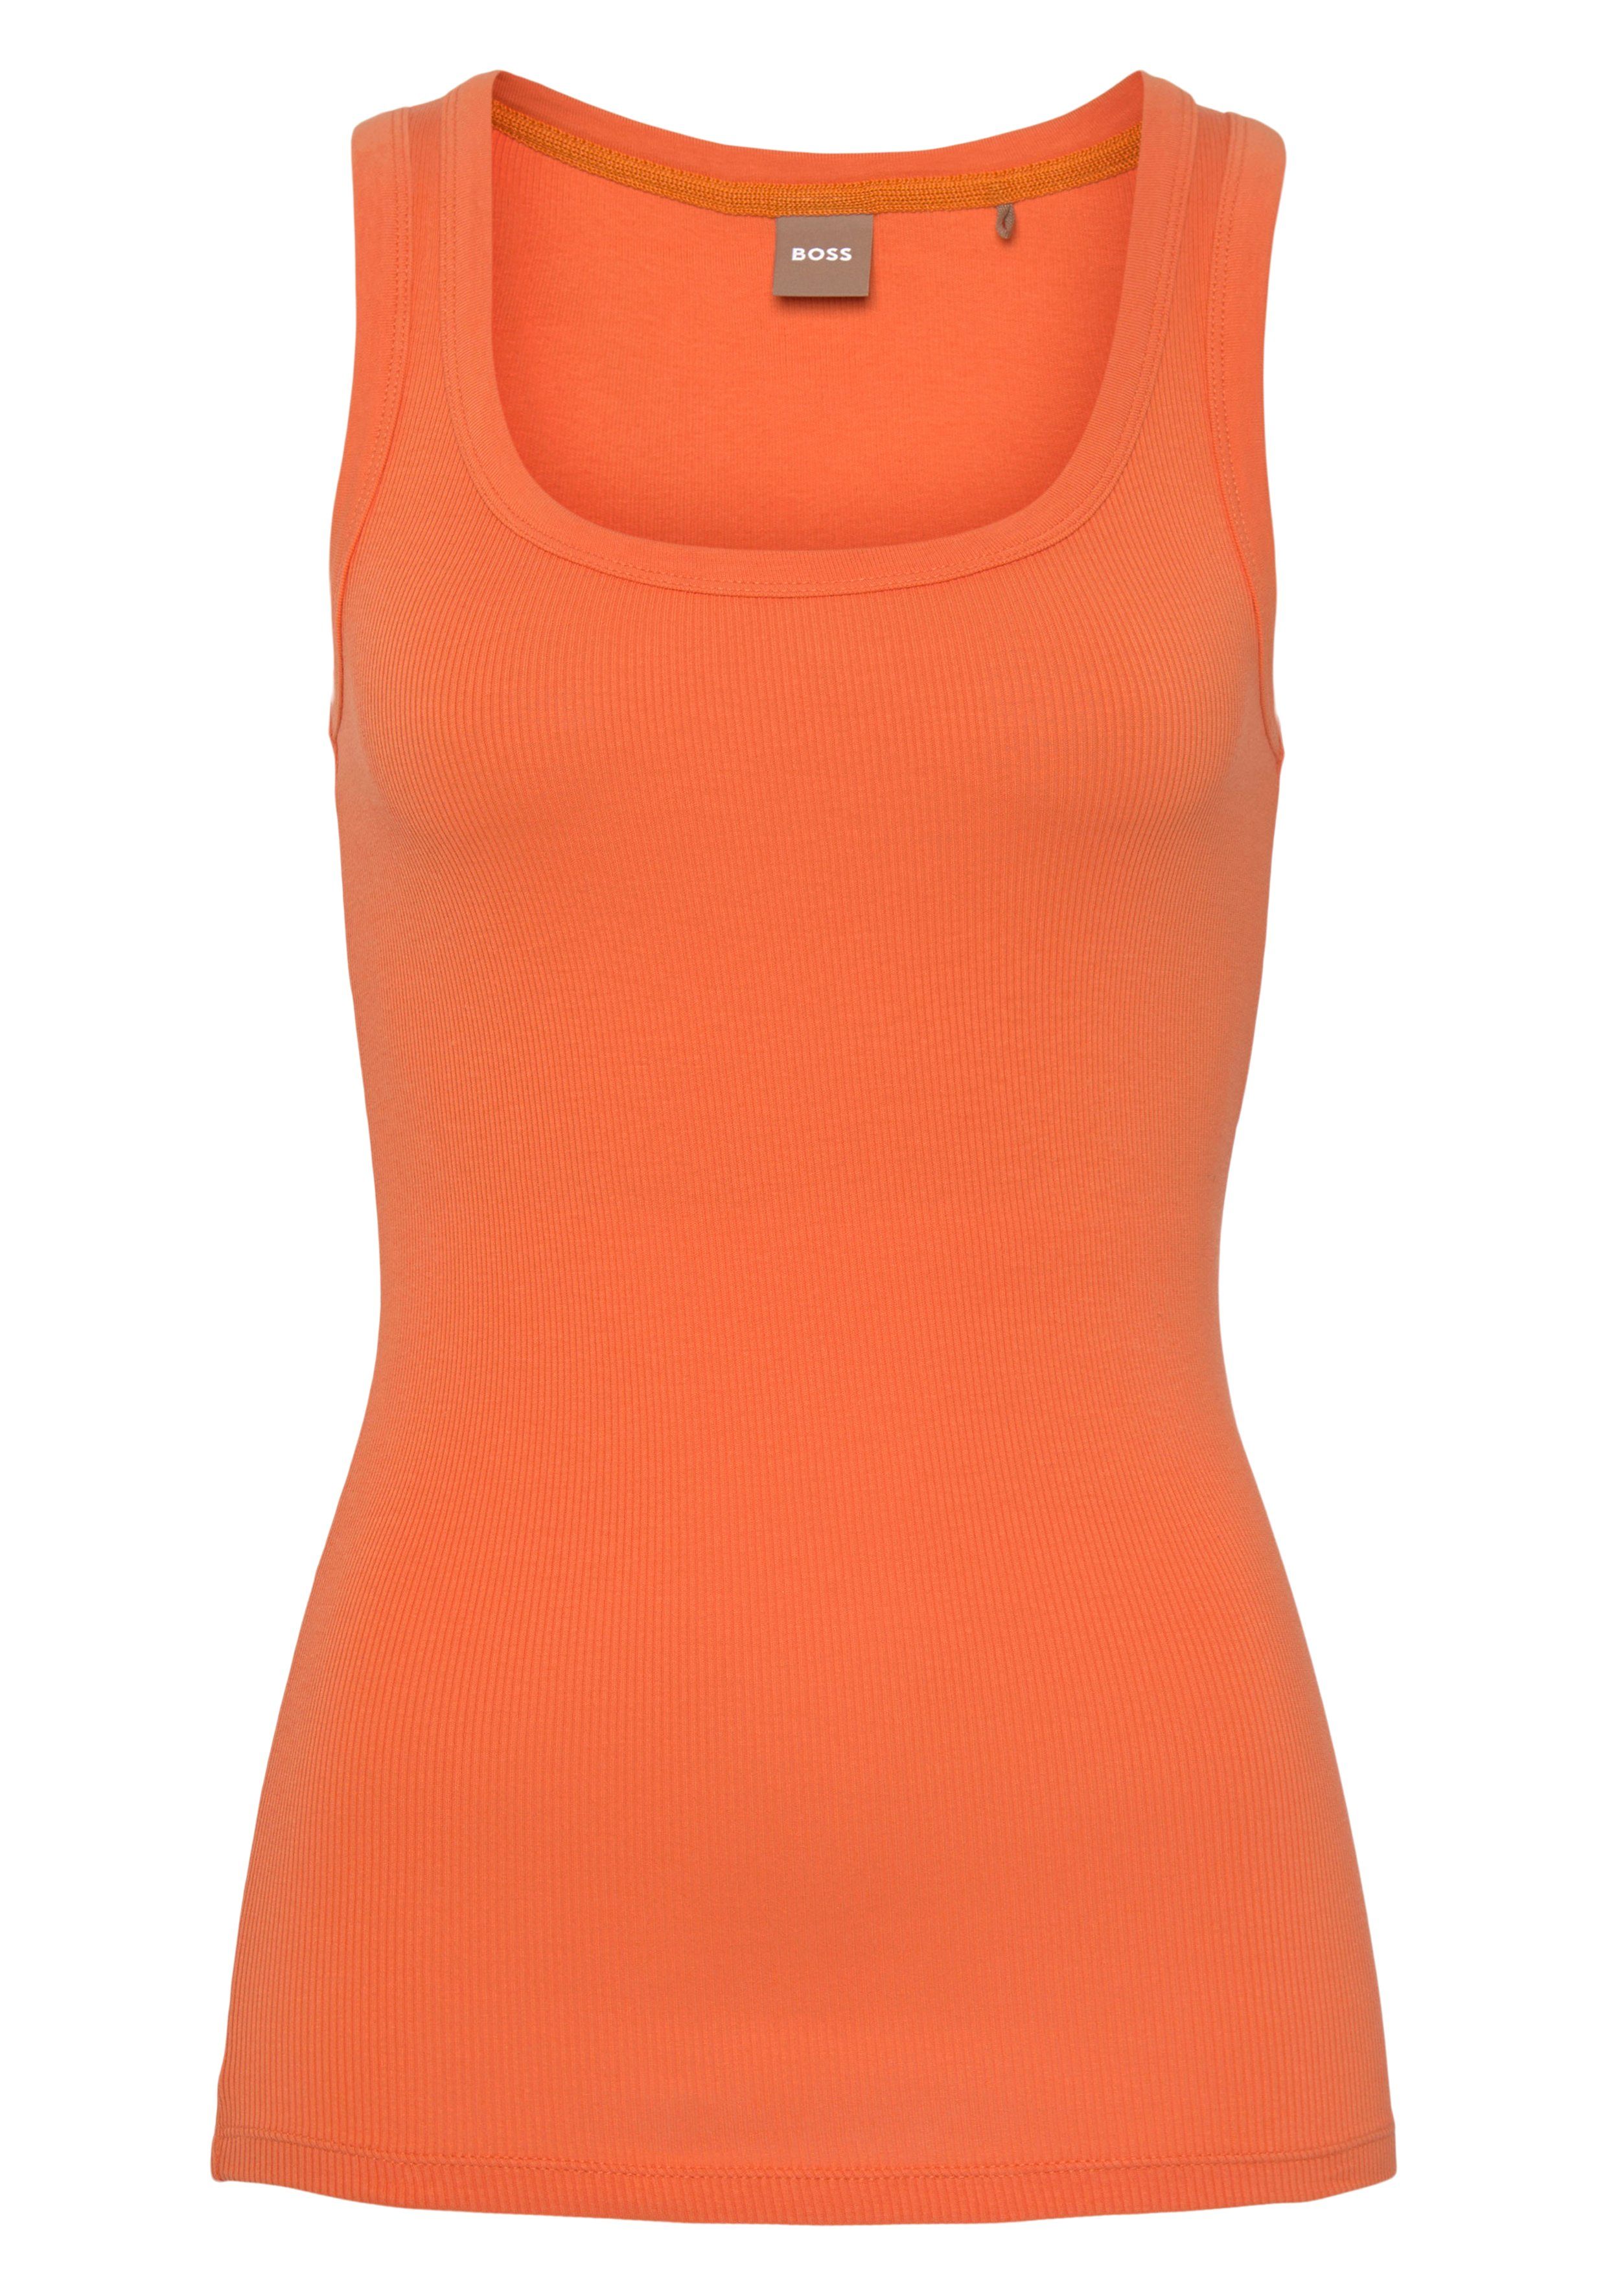 ORANGE Markenstreifen BOSS Bright_Orange BOSS Muskelshirt innen mit